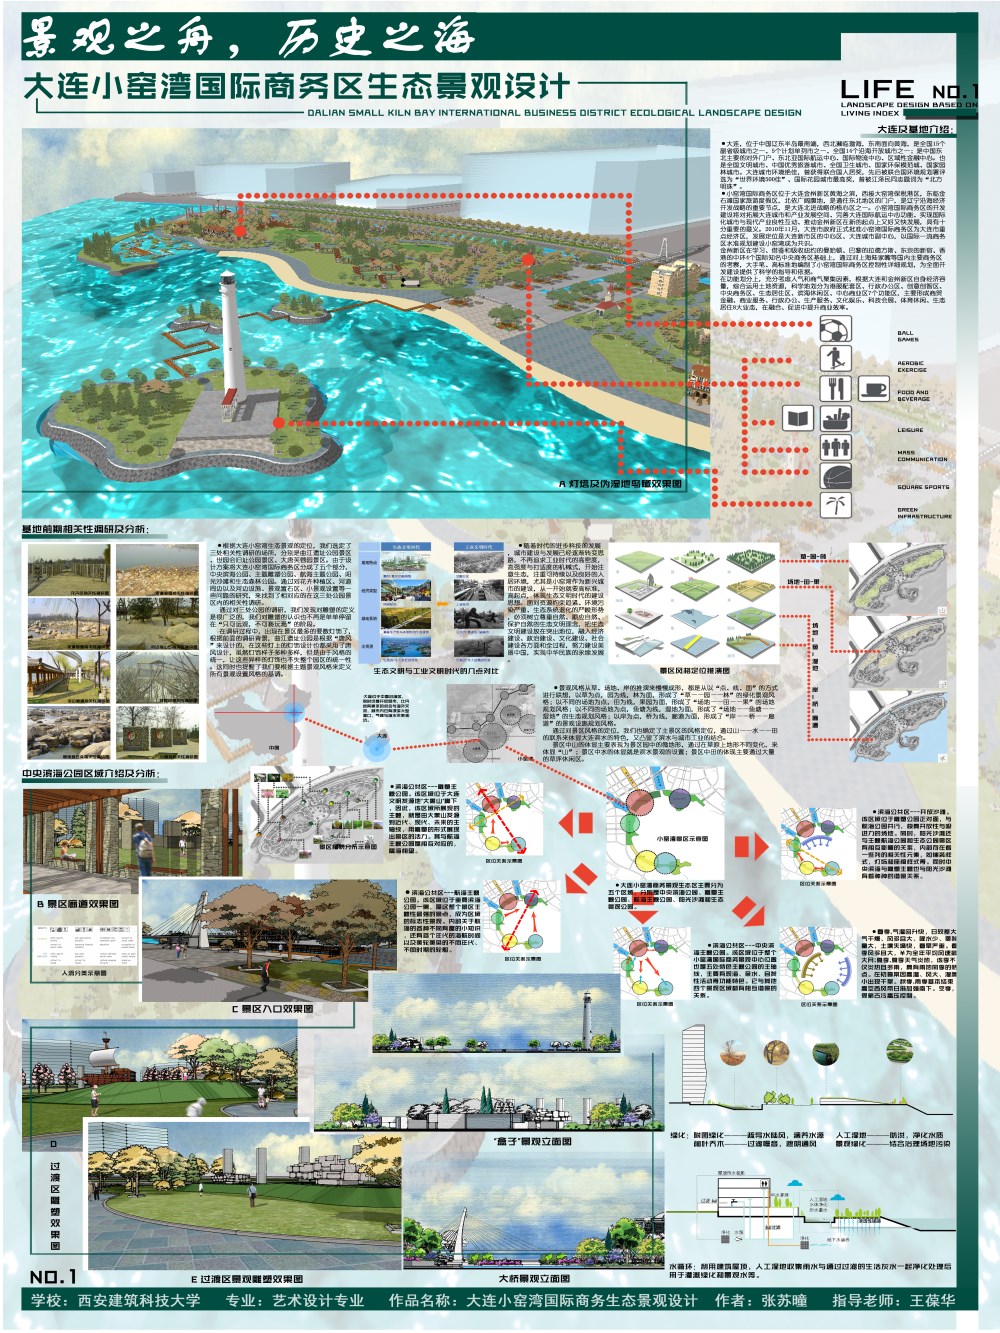 大连小窑湾国际商务区生态景观设计-1